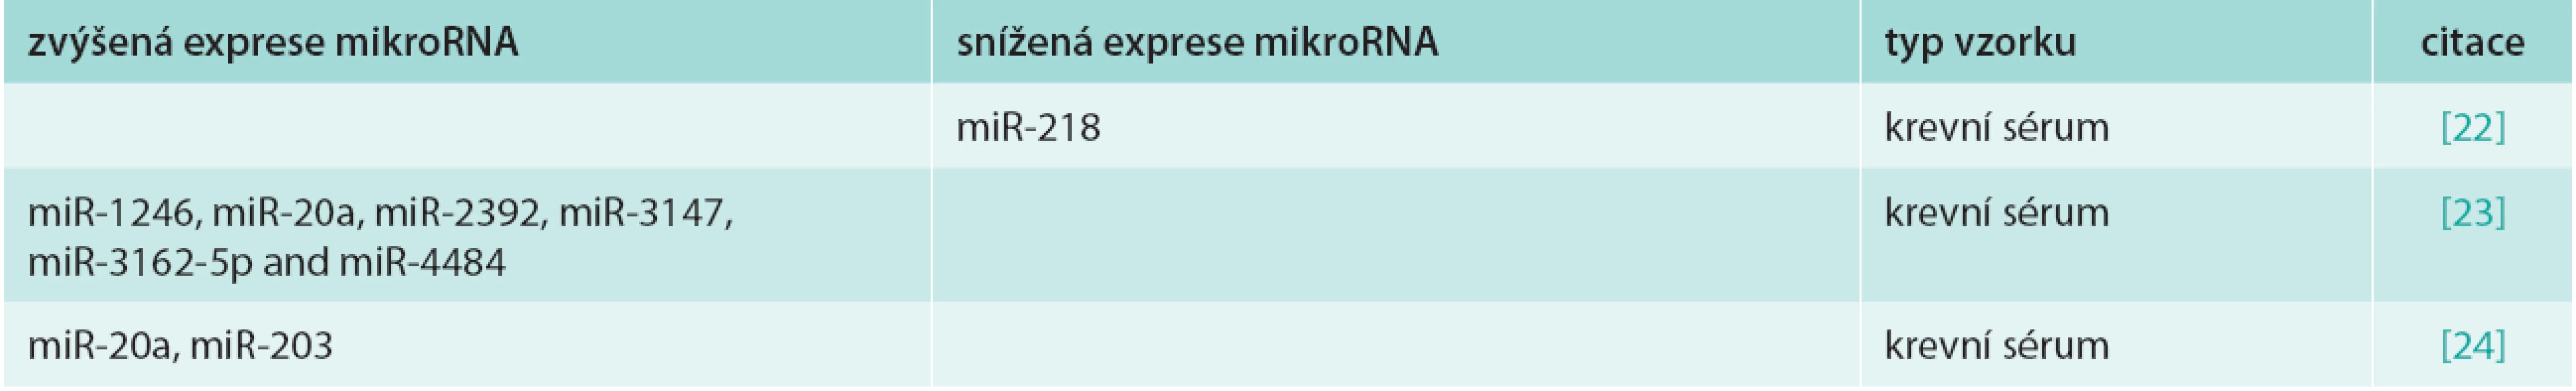 Přehled deregulovaných cirkulujících a extracelulárních mikroRNA u karcinomu cervixu